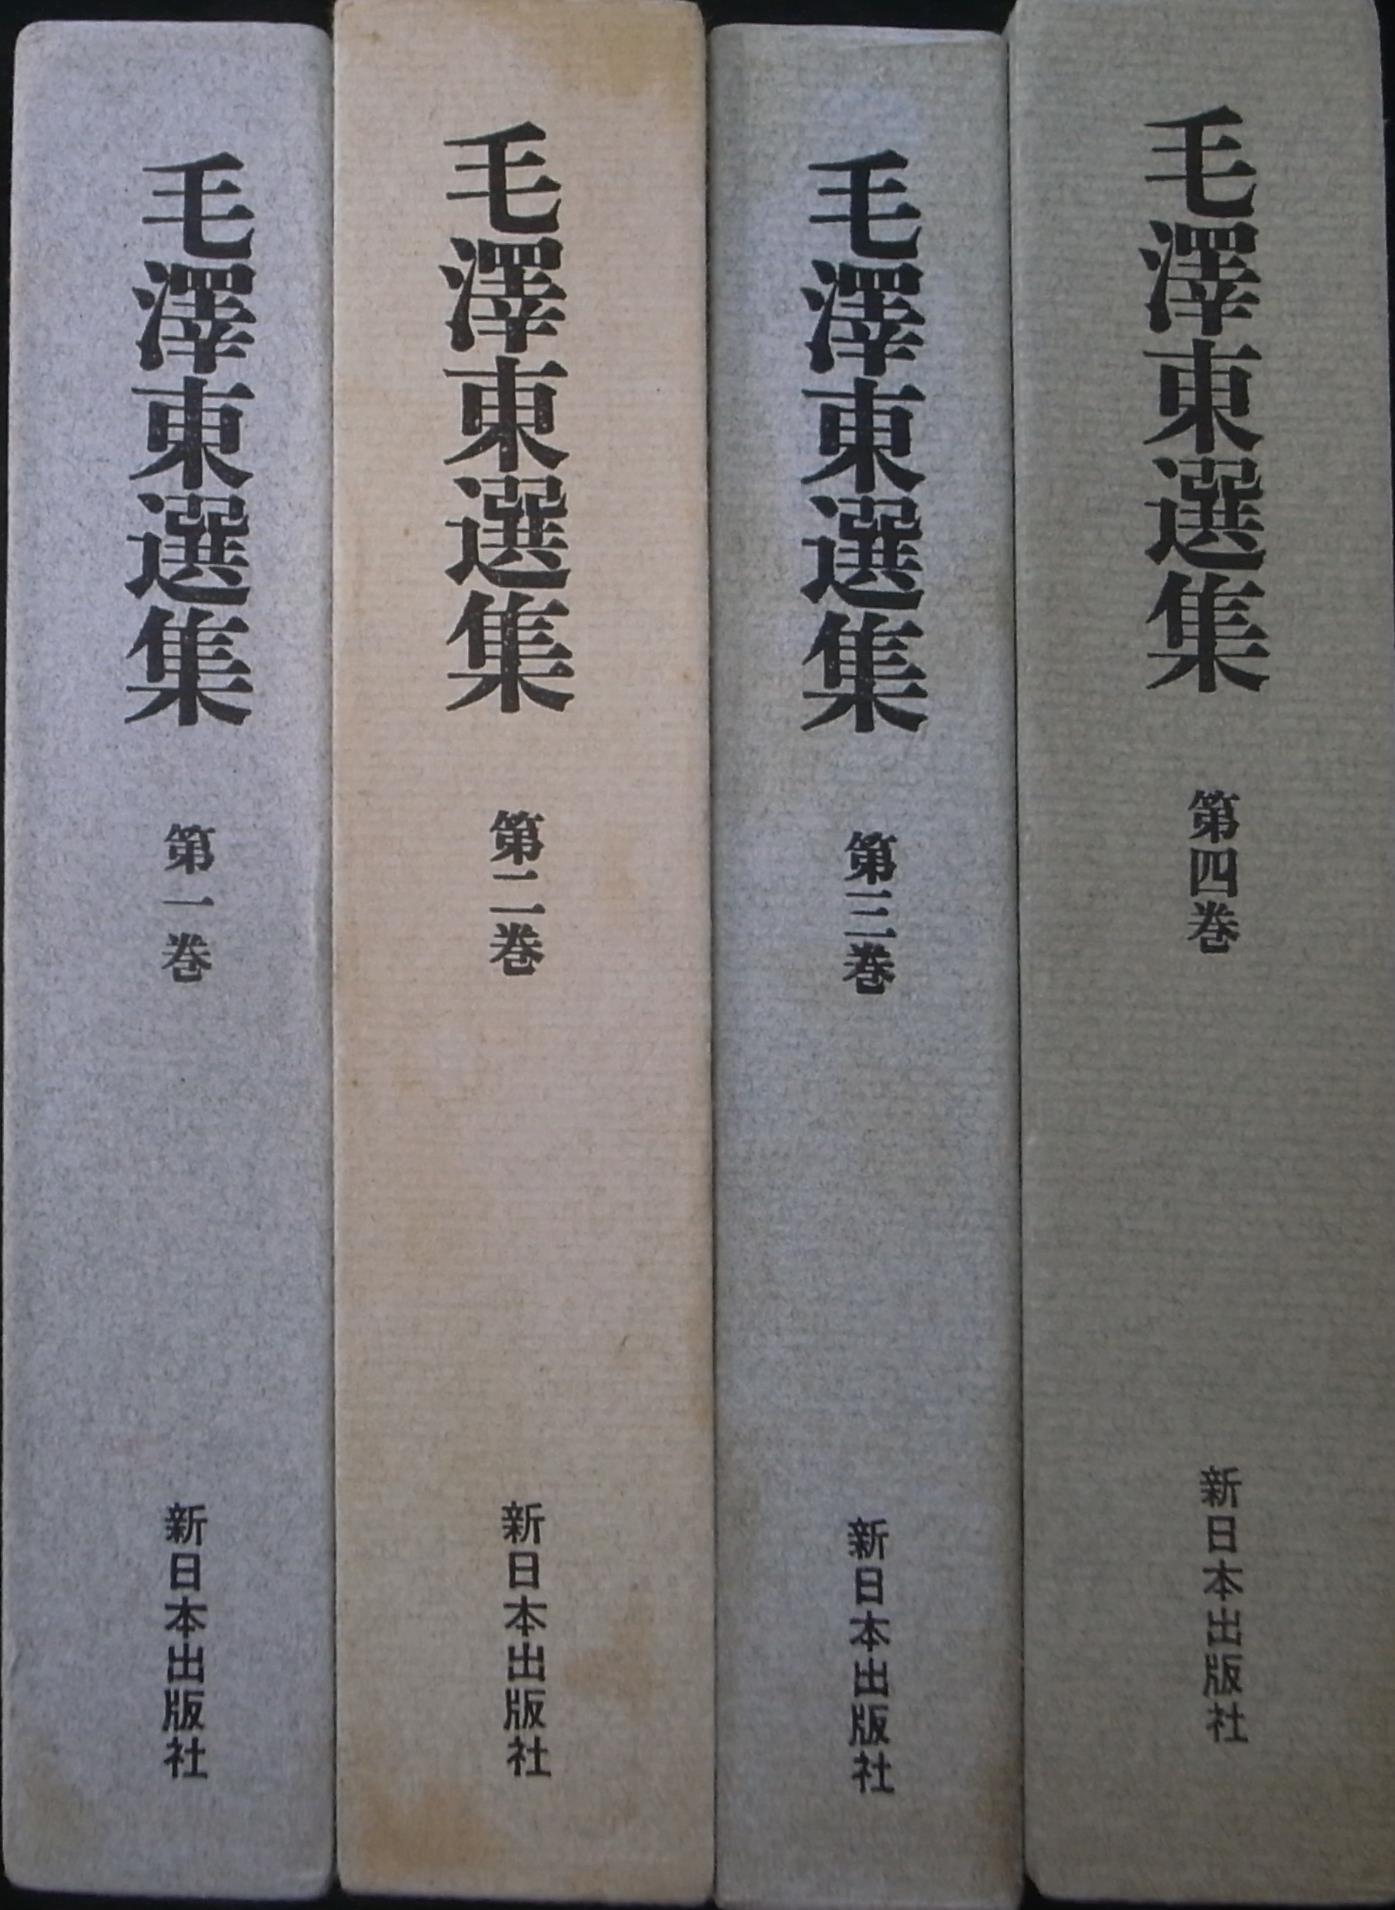 毛沢東選集 全4冊揃 毛沢東 | 古本よみた屋 おじいさんの本、買います。